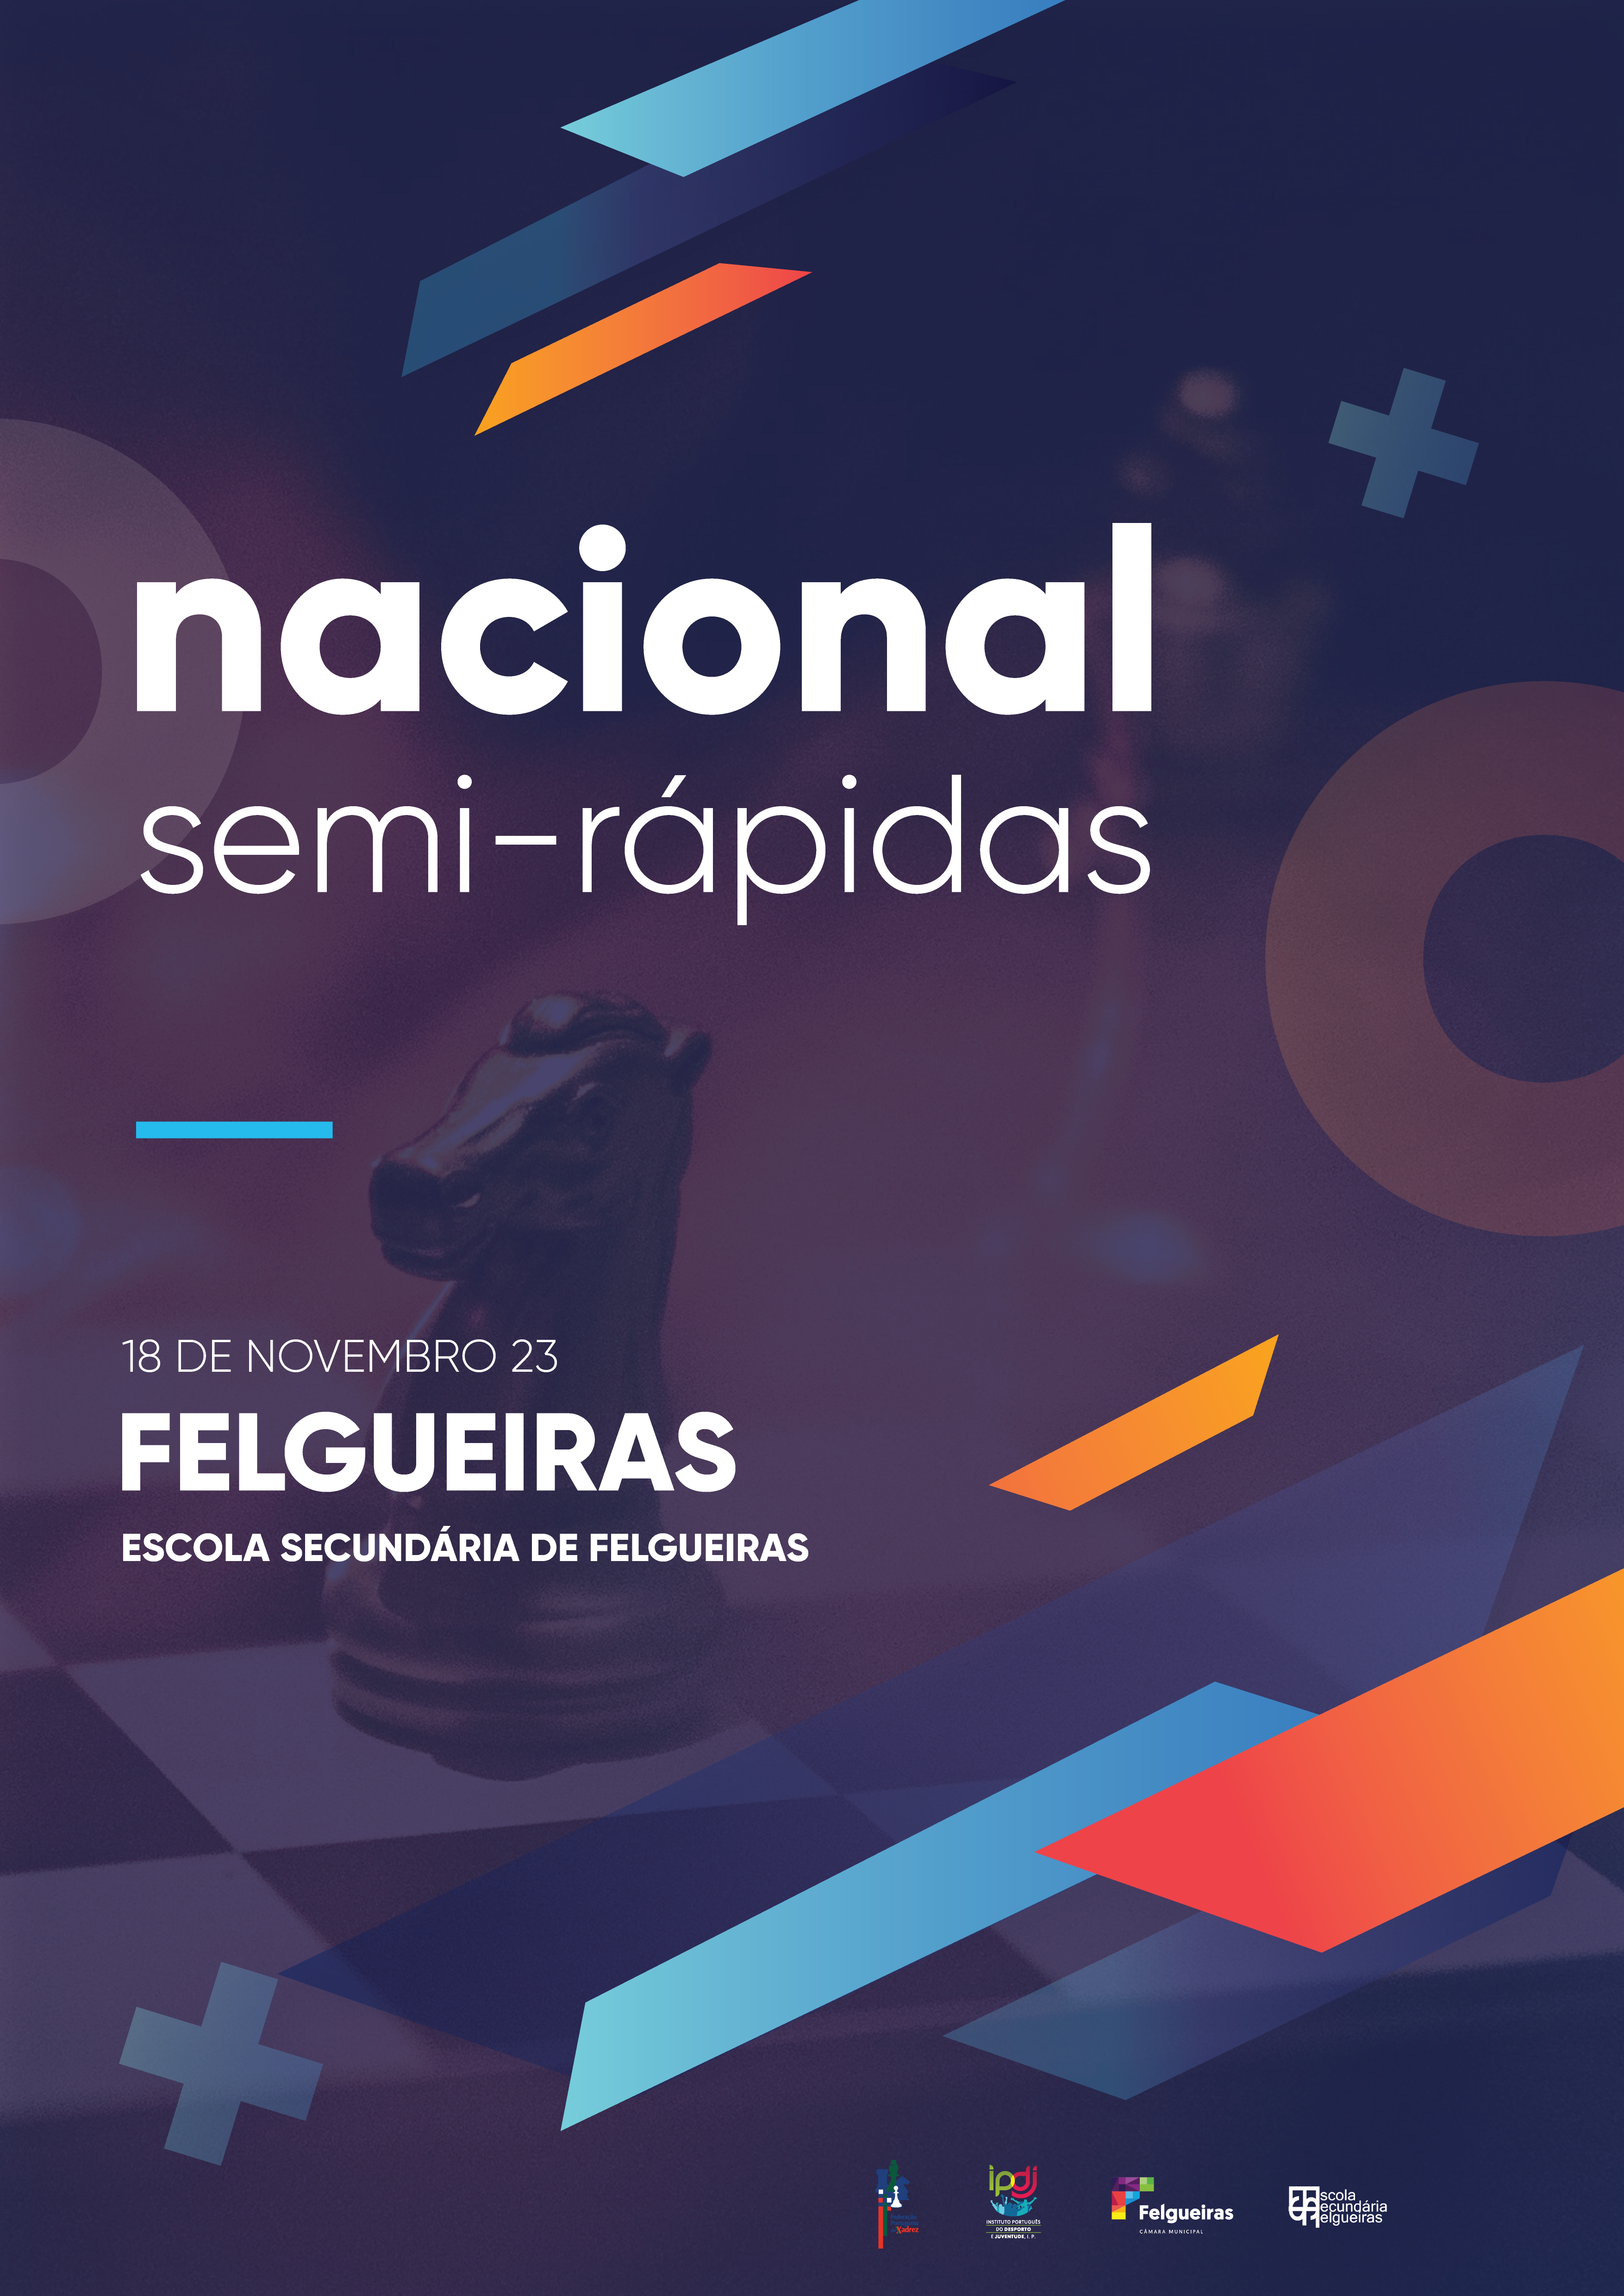 2º Campeonato Felgueiras Xadrez - Câmara Municipal de Felgueiras